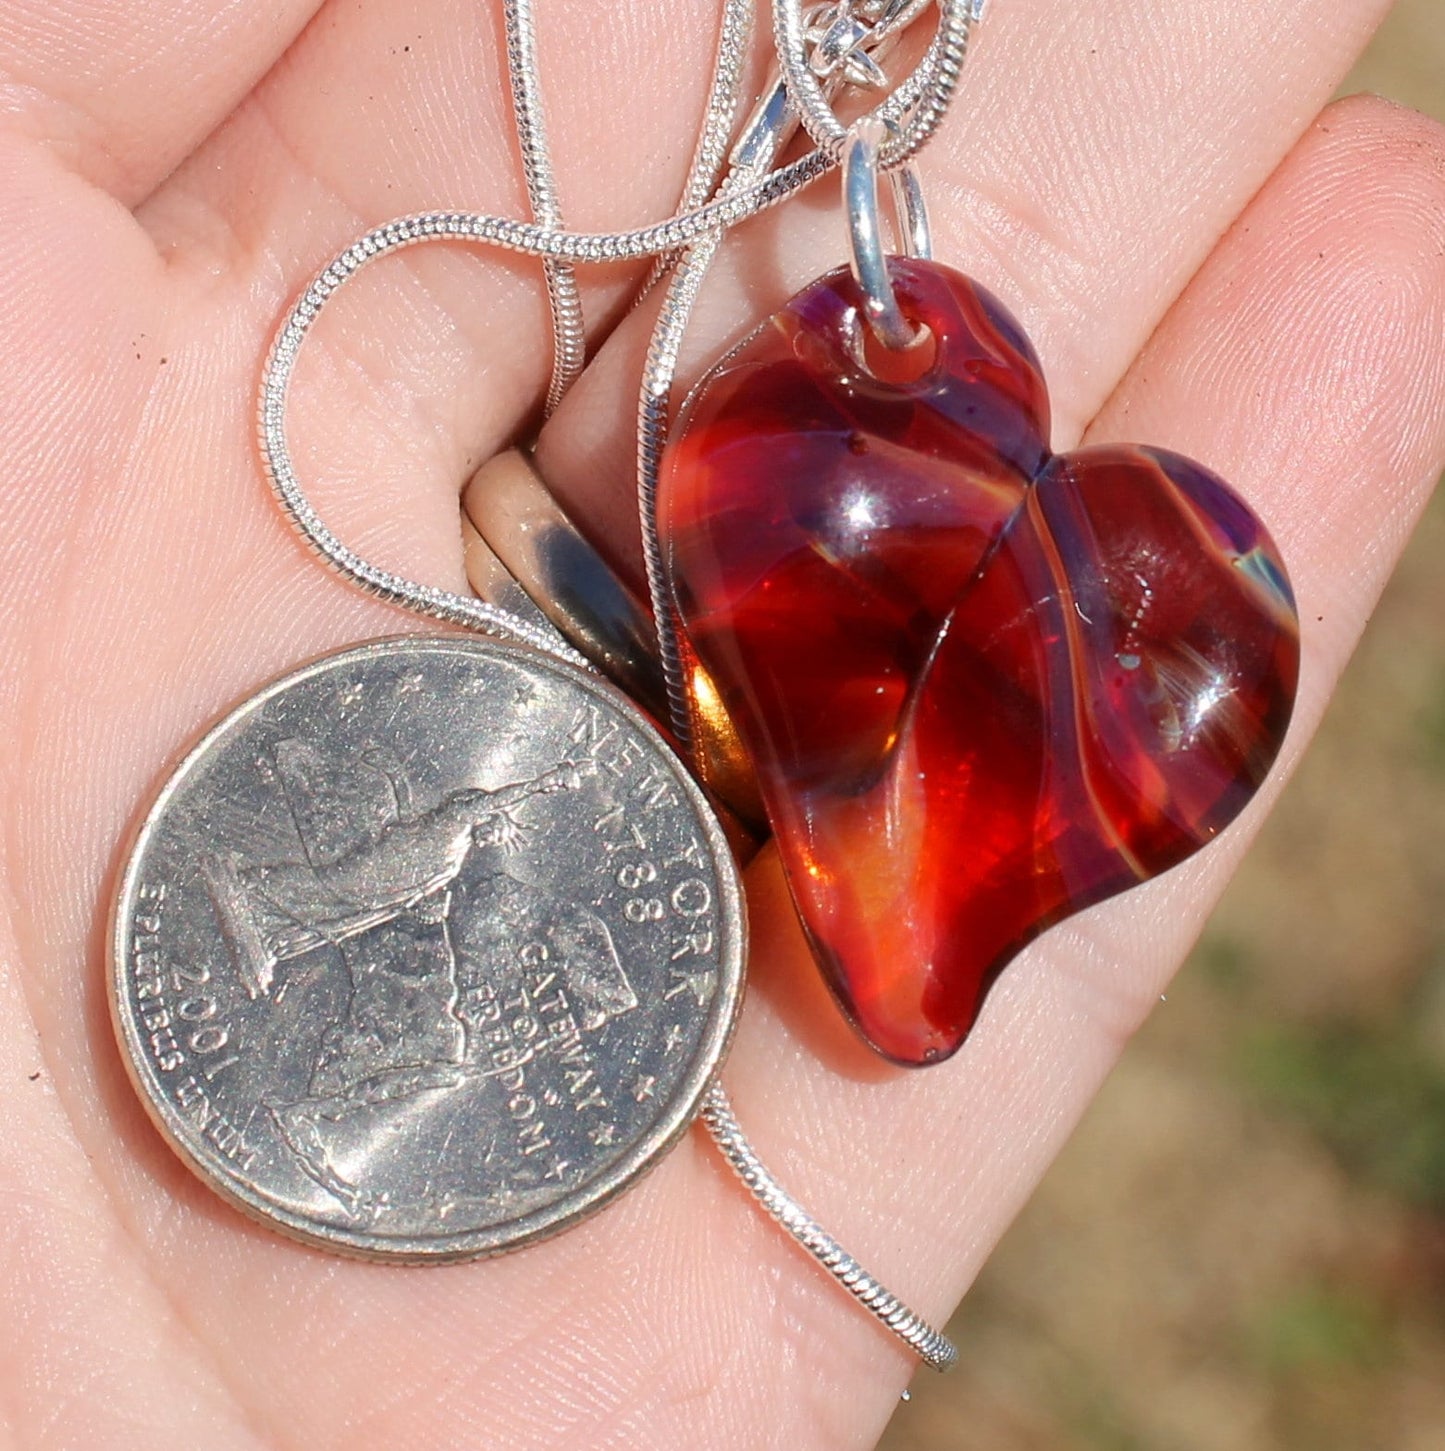 Heart Necklace Glass Pendant Silver Chain Handblown SRA Purple